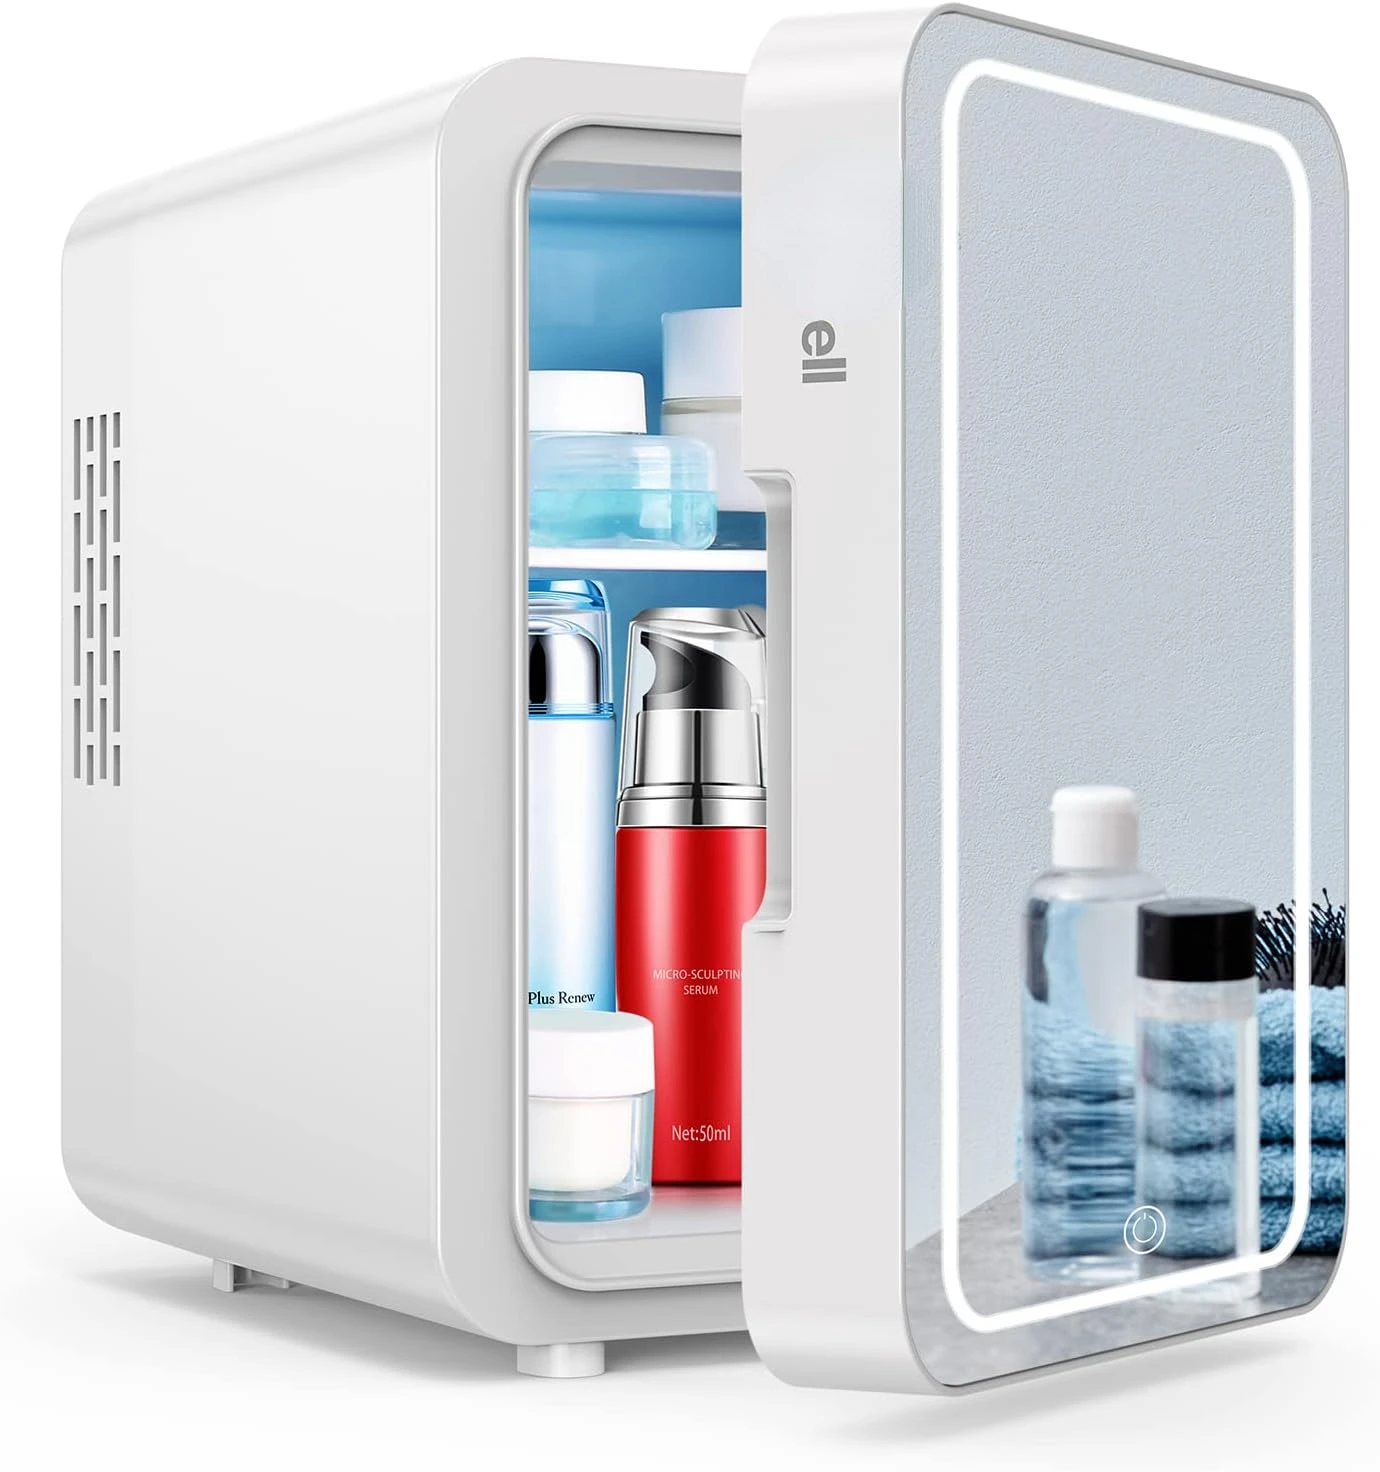 

Мини-холодильник WRE110 для спальни, 4/6 контейнеров для ухода за кожей с зеркальным фотоаппаратом, 12 В переменного/постоянного тока, маленький холодильник для ухода за кожей, косметики, макияжа, красоты